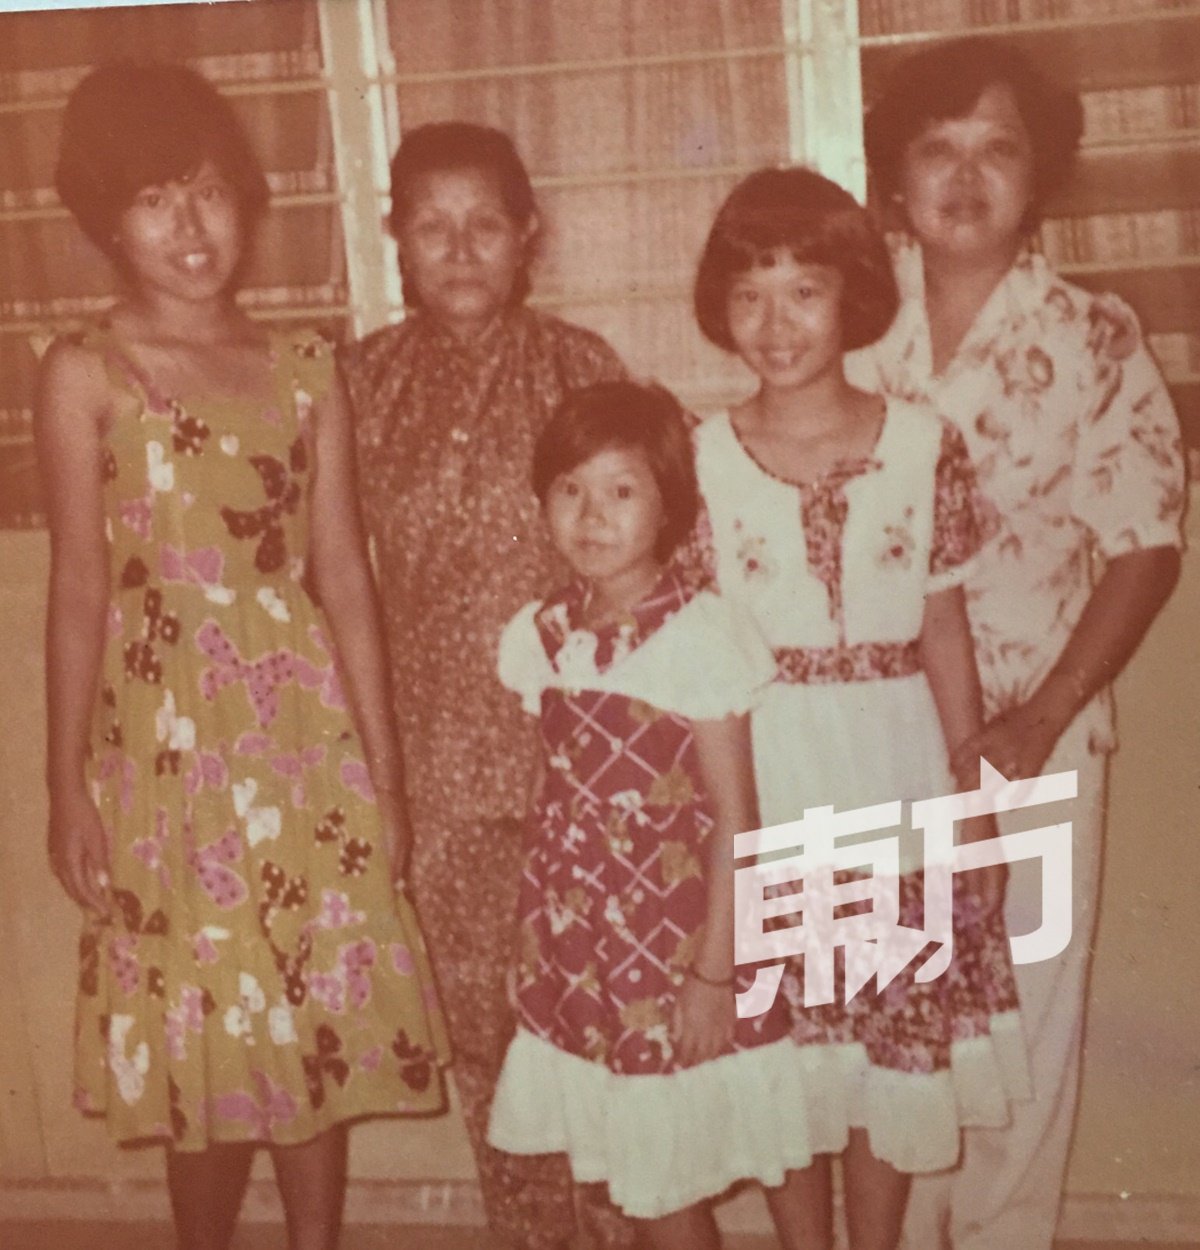 从小，妈妈就在吉隆坡工作，蔡慧燕四兄弟姐妹就由婆婆照顾，与母亲聚少离多，因此从小关系疏离。图为蔡慧燕与婆婆（左二）、妈妈（右）及妹妹们的合照。